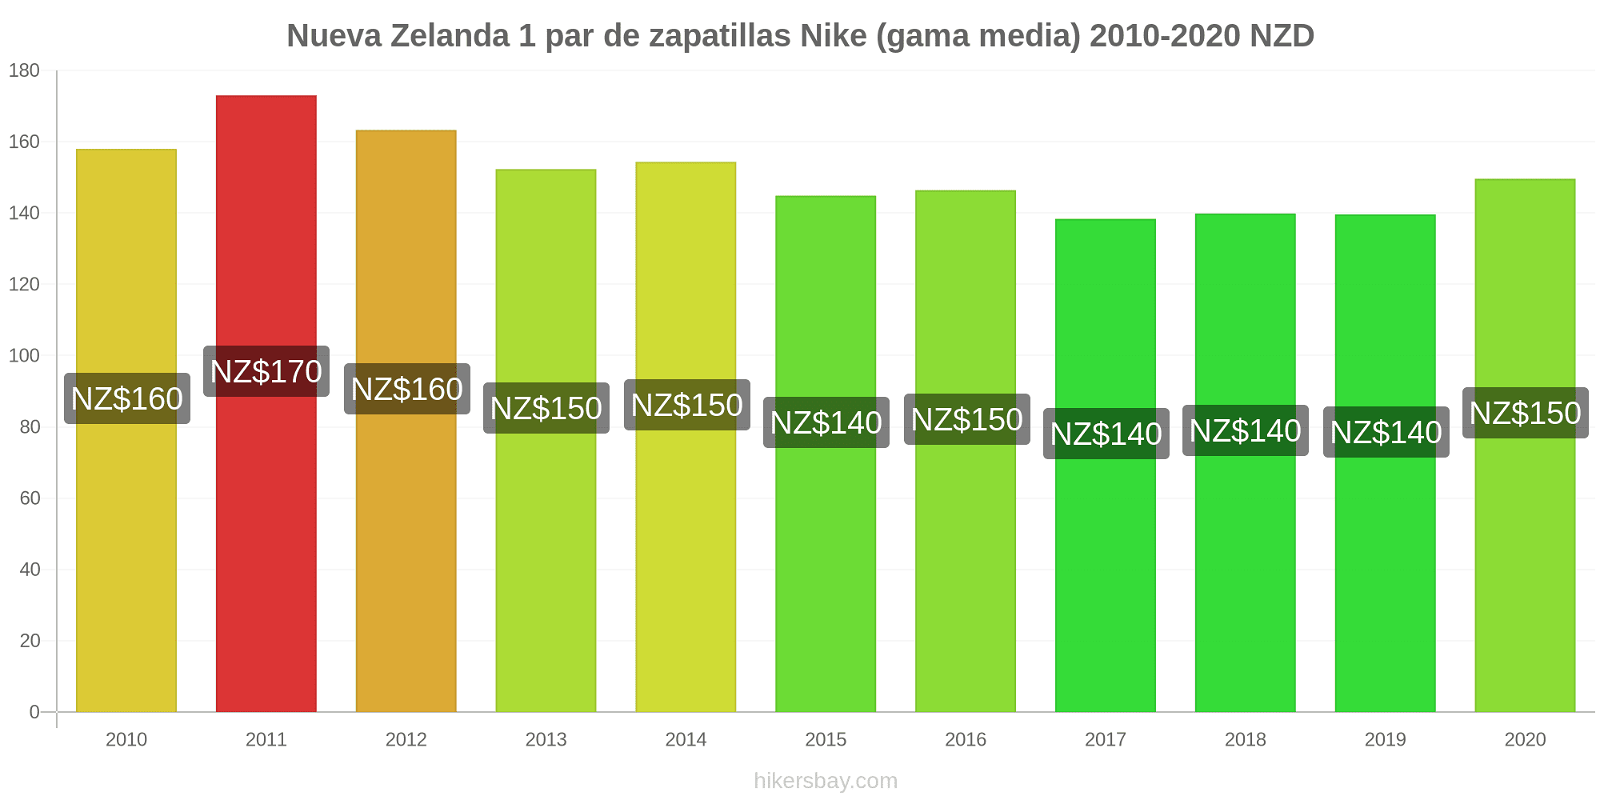 Nueva Zelanda cambios de precios 1 par de zapatillas Nike (gama media) hikersbay.com